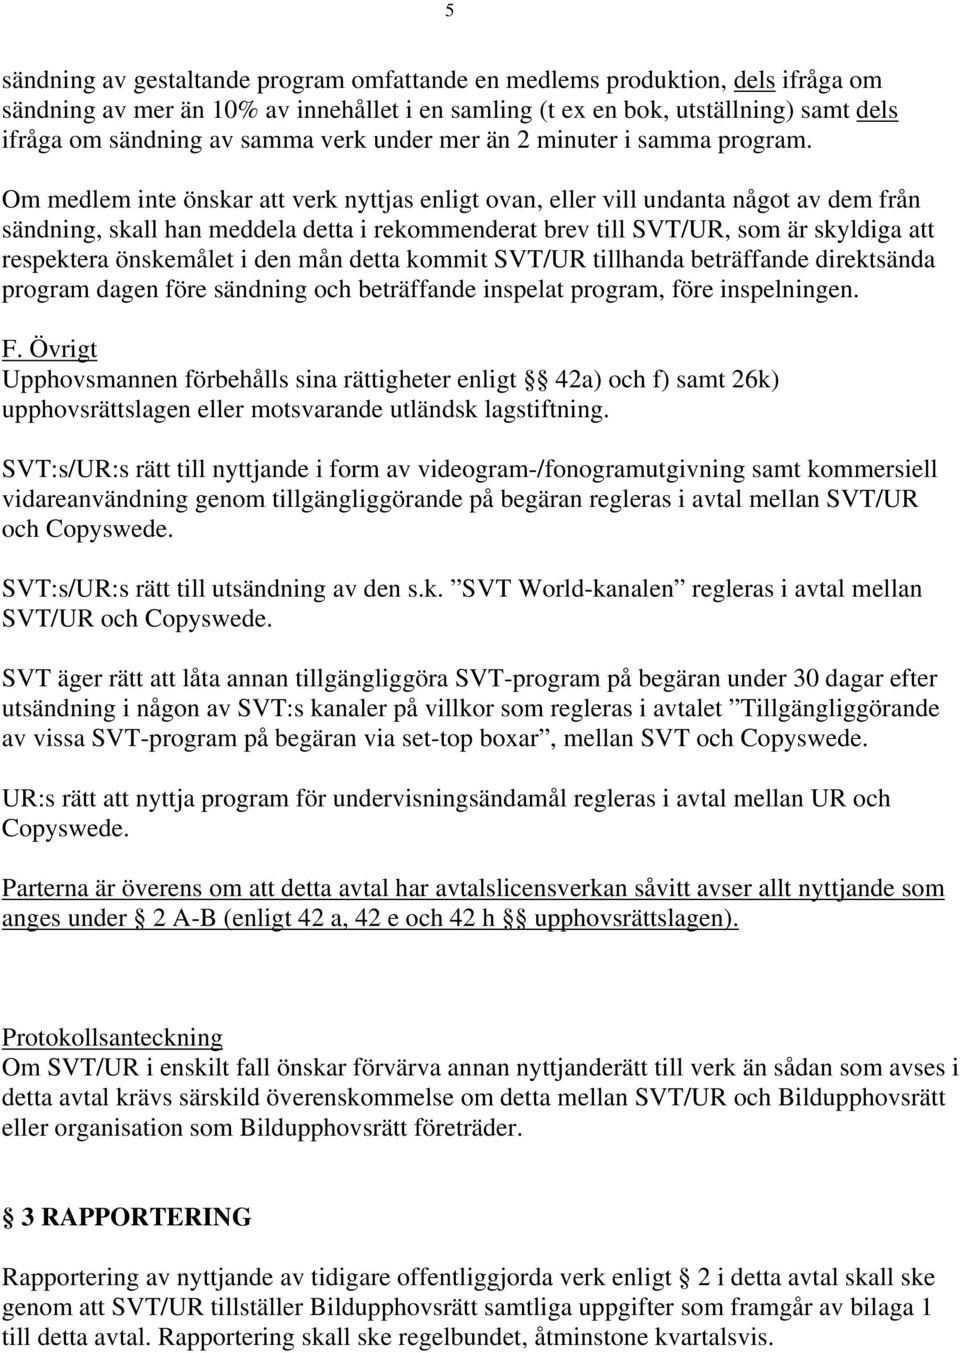 Bildupphovsrätt i Sverige ekonomisk förening - PDF Free Download